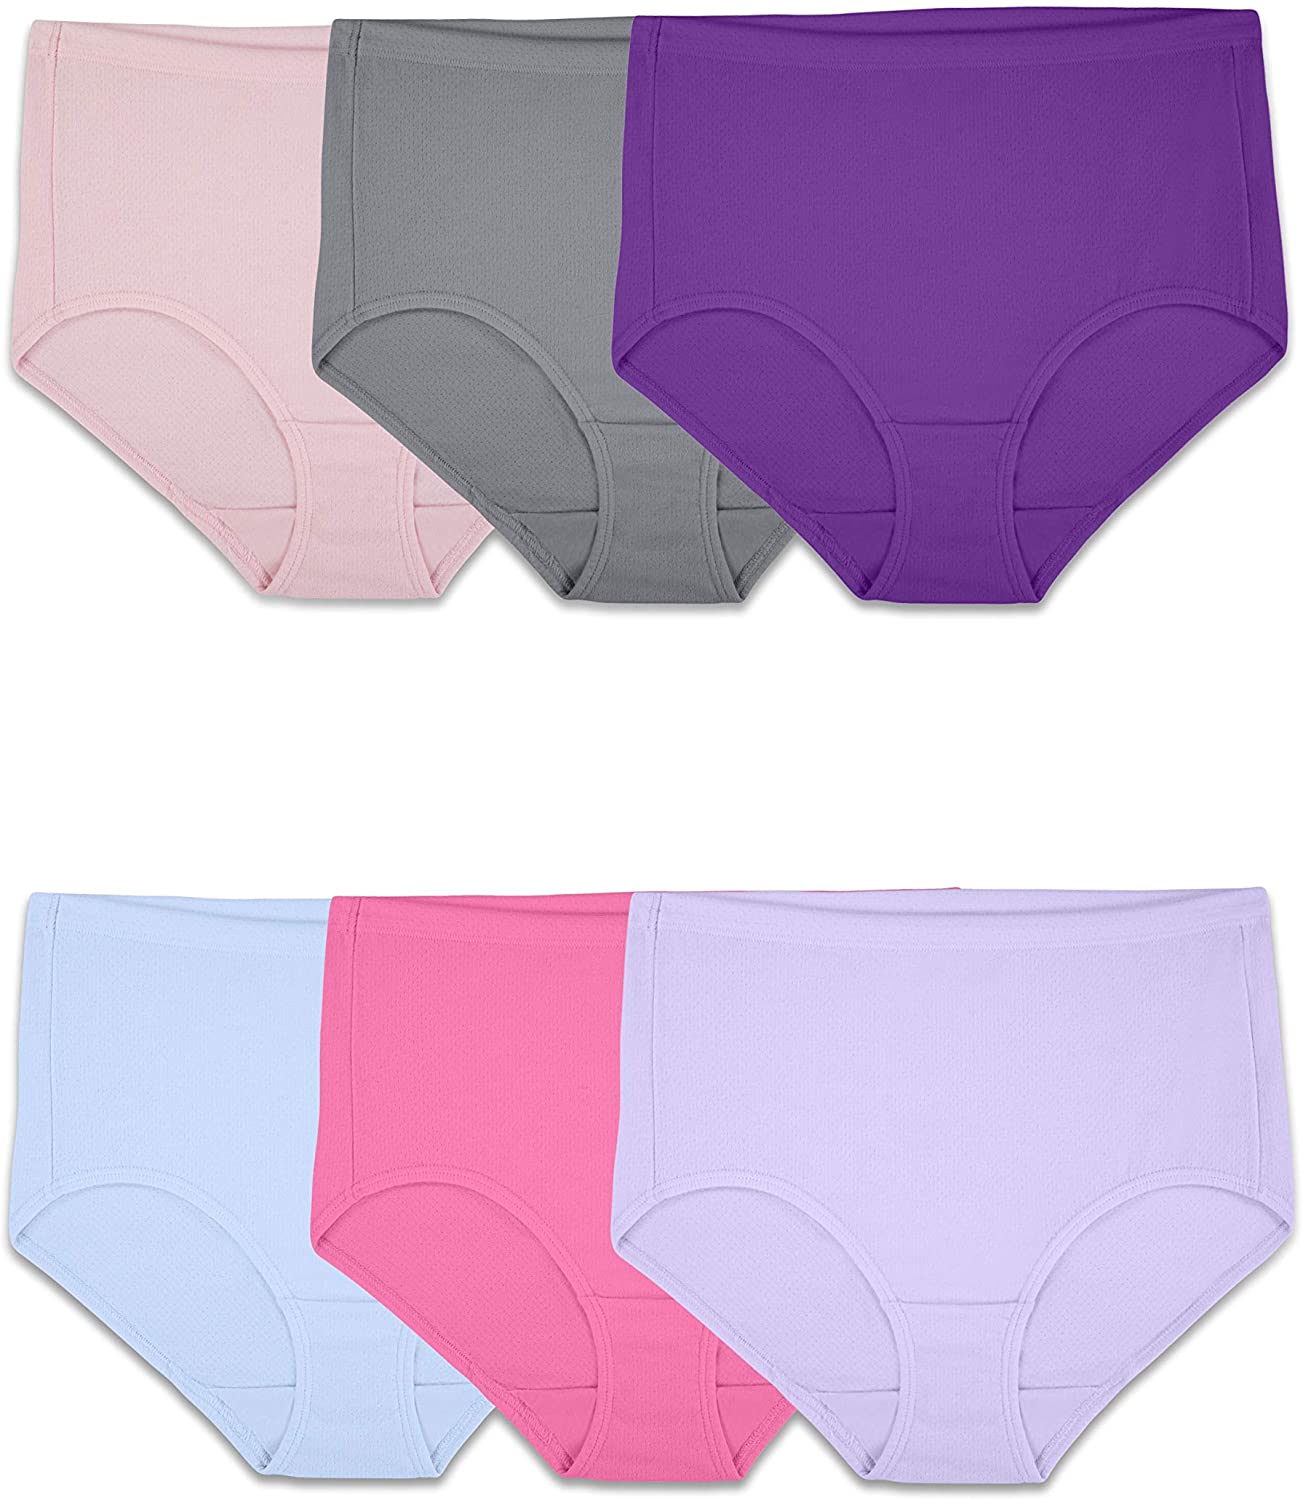 https://www.dontwasteyourmoney.com/wp-content/uploads/2020/05/fruit-of-the-loom-womens-breathable-underwear-high-waist-underwear.jpg